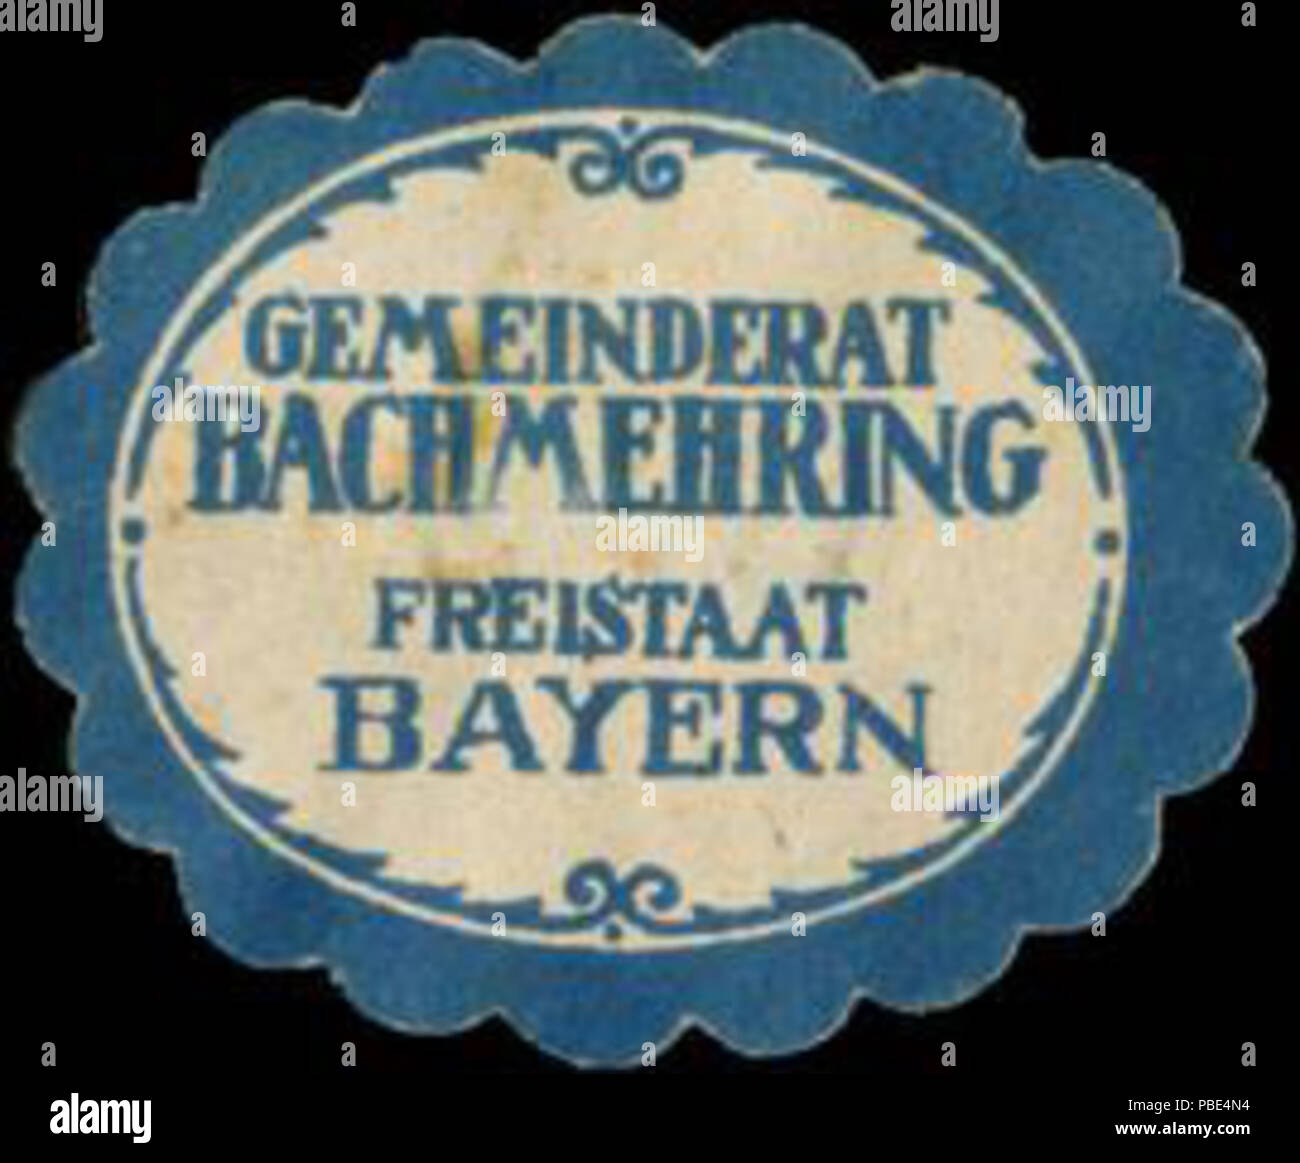 1387 Siegelmarke Gemeinderat Bachmehring Freistaat Bayern W0382756 Stock Photo